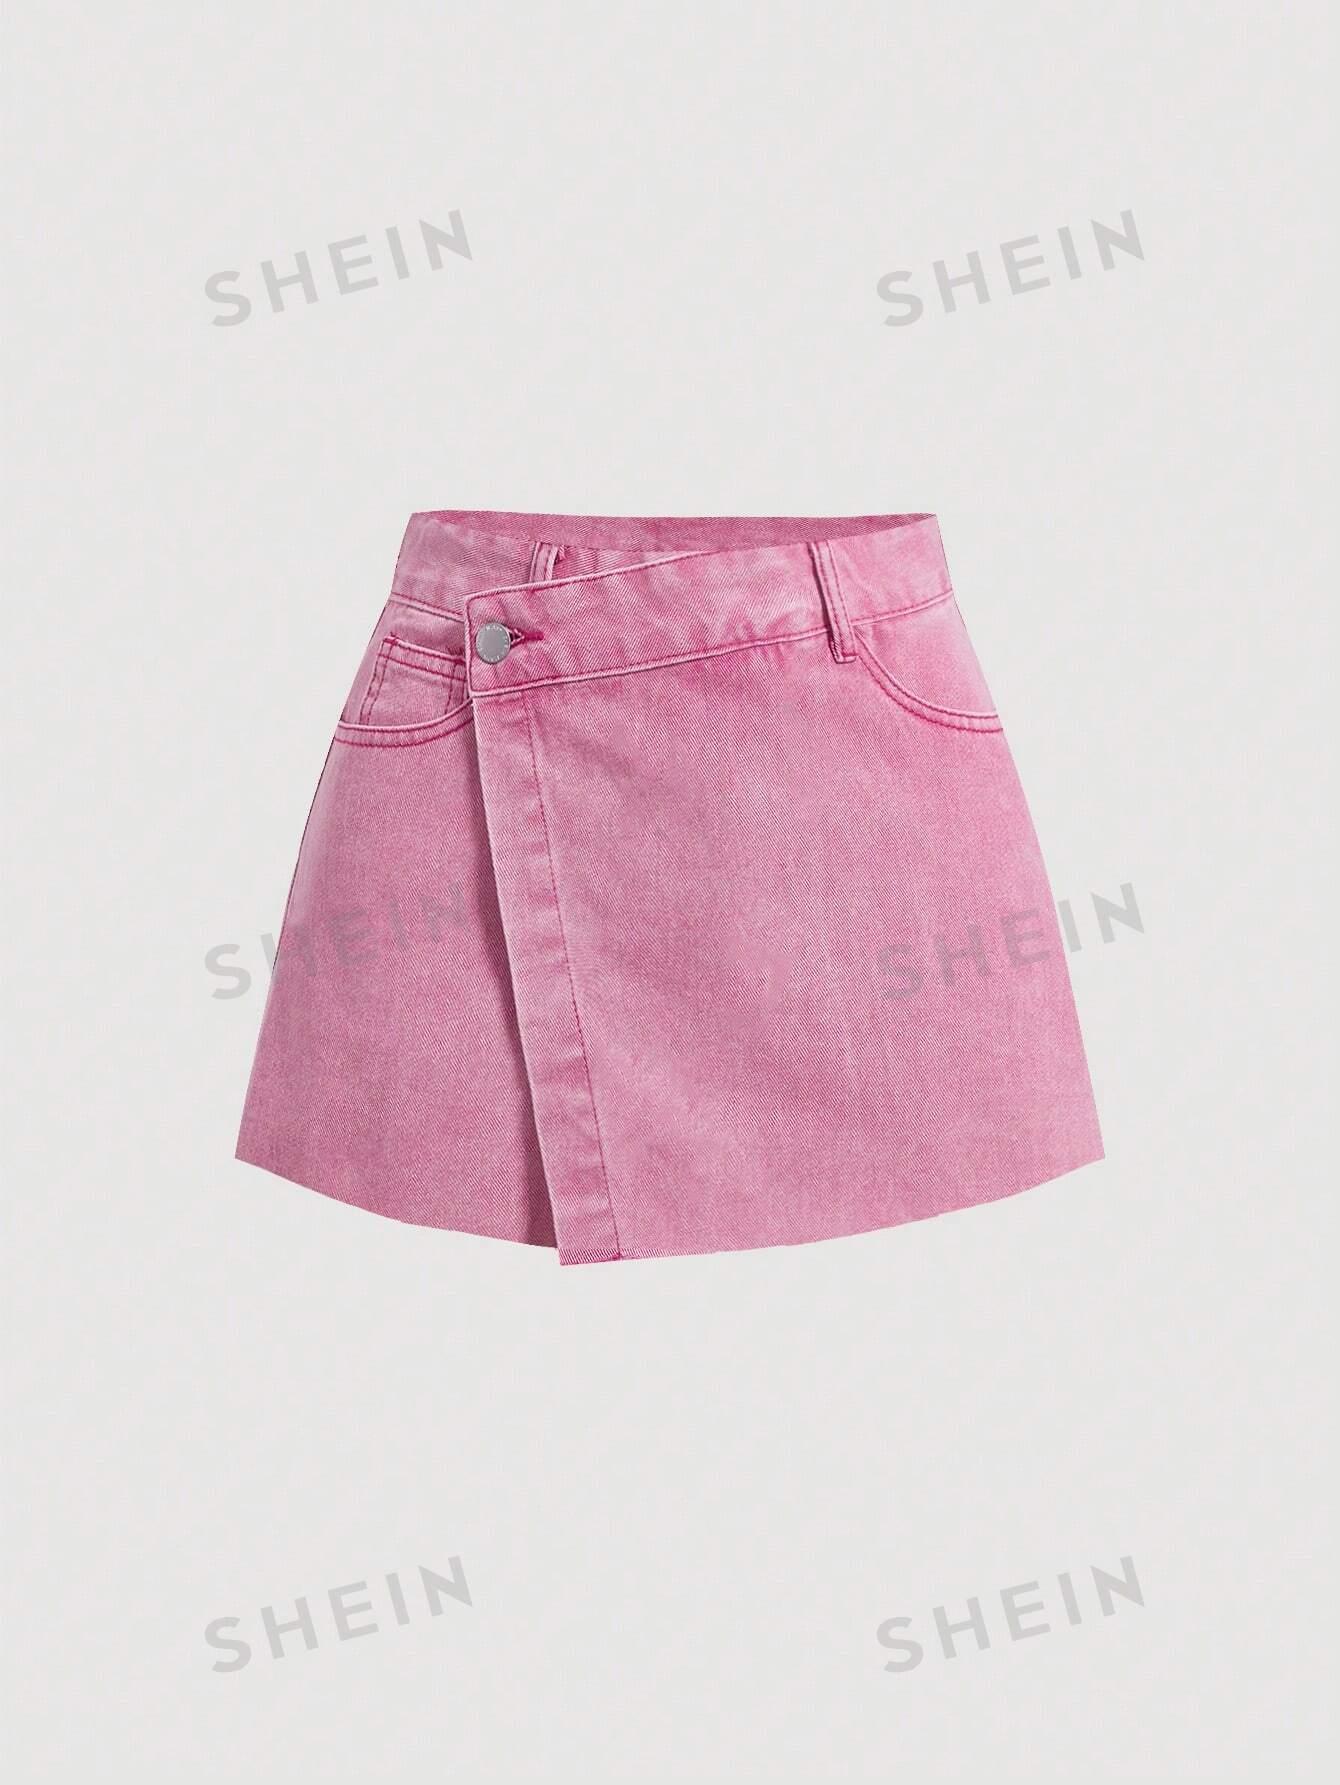 SHEIN MOD женские однотонные повседневные джинсовые шорты с потертым краем, розовый женские джинсовые шорты с завышенной талией летние сексуальные рваные джинсовые шорты повседневные винтажные розовые шорты с эластичным